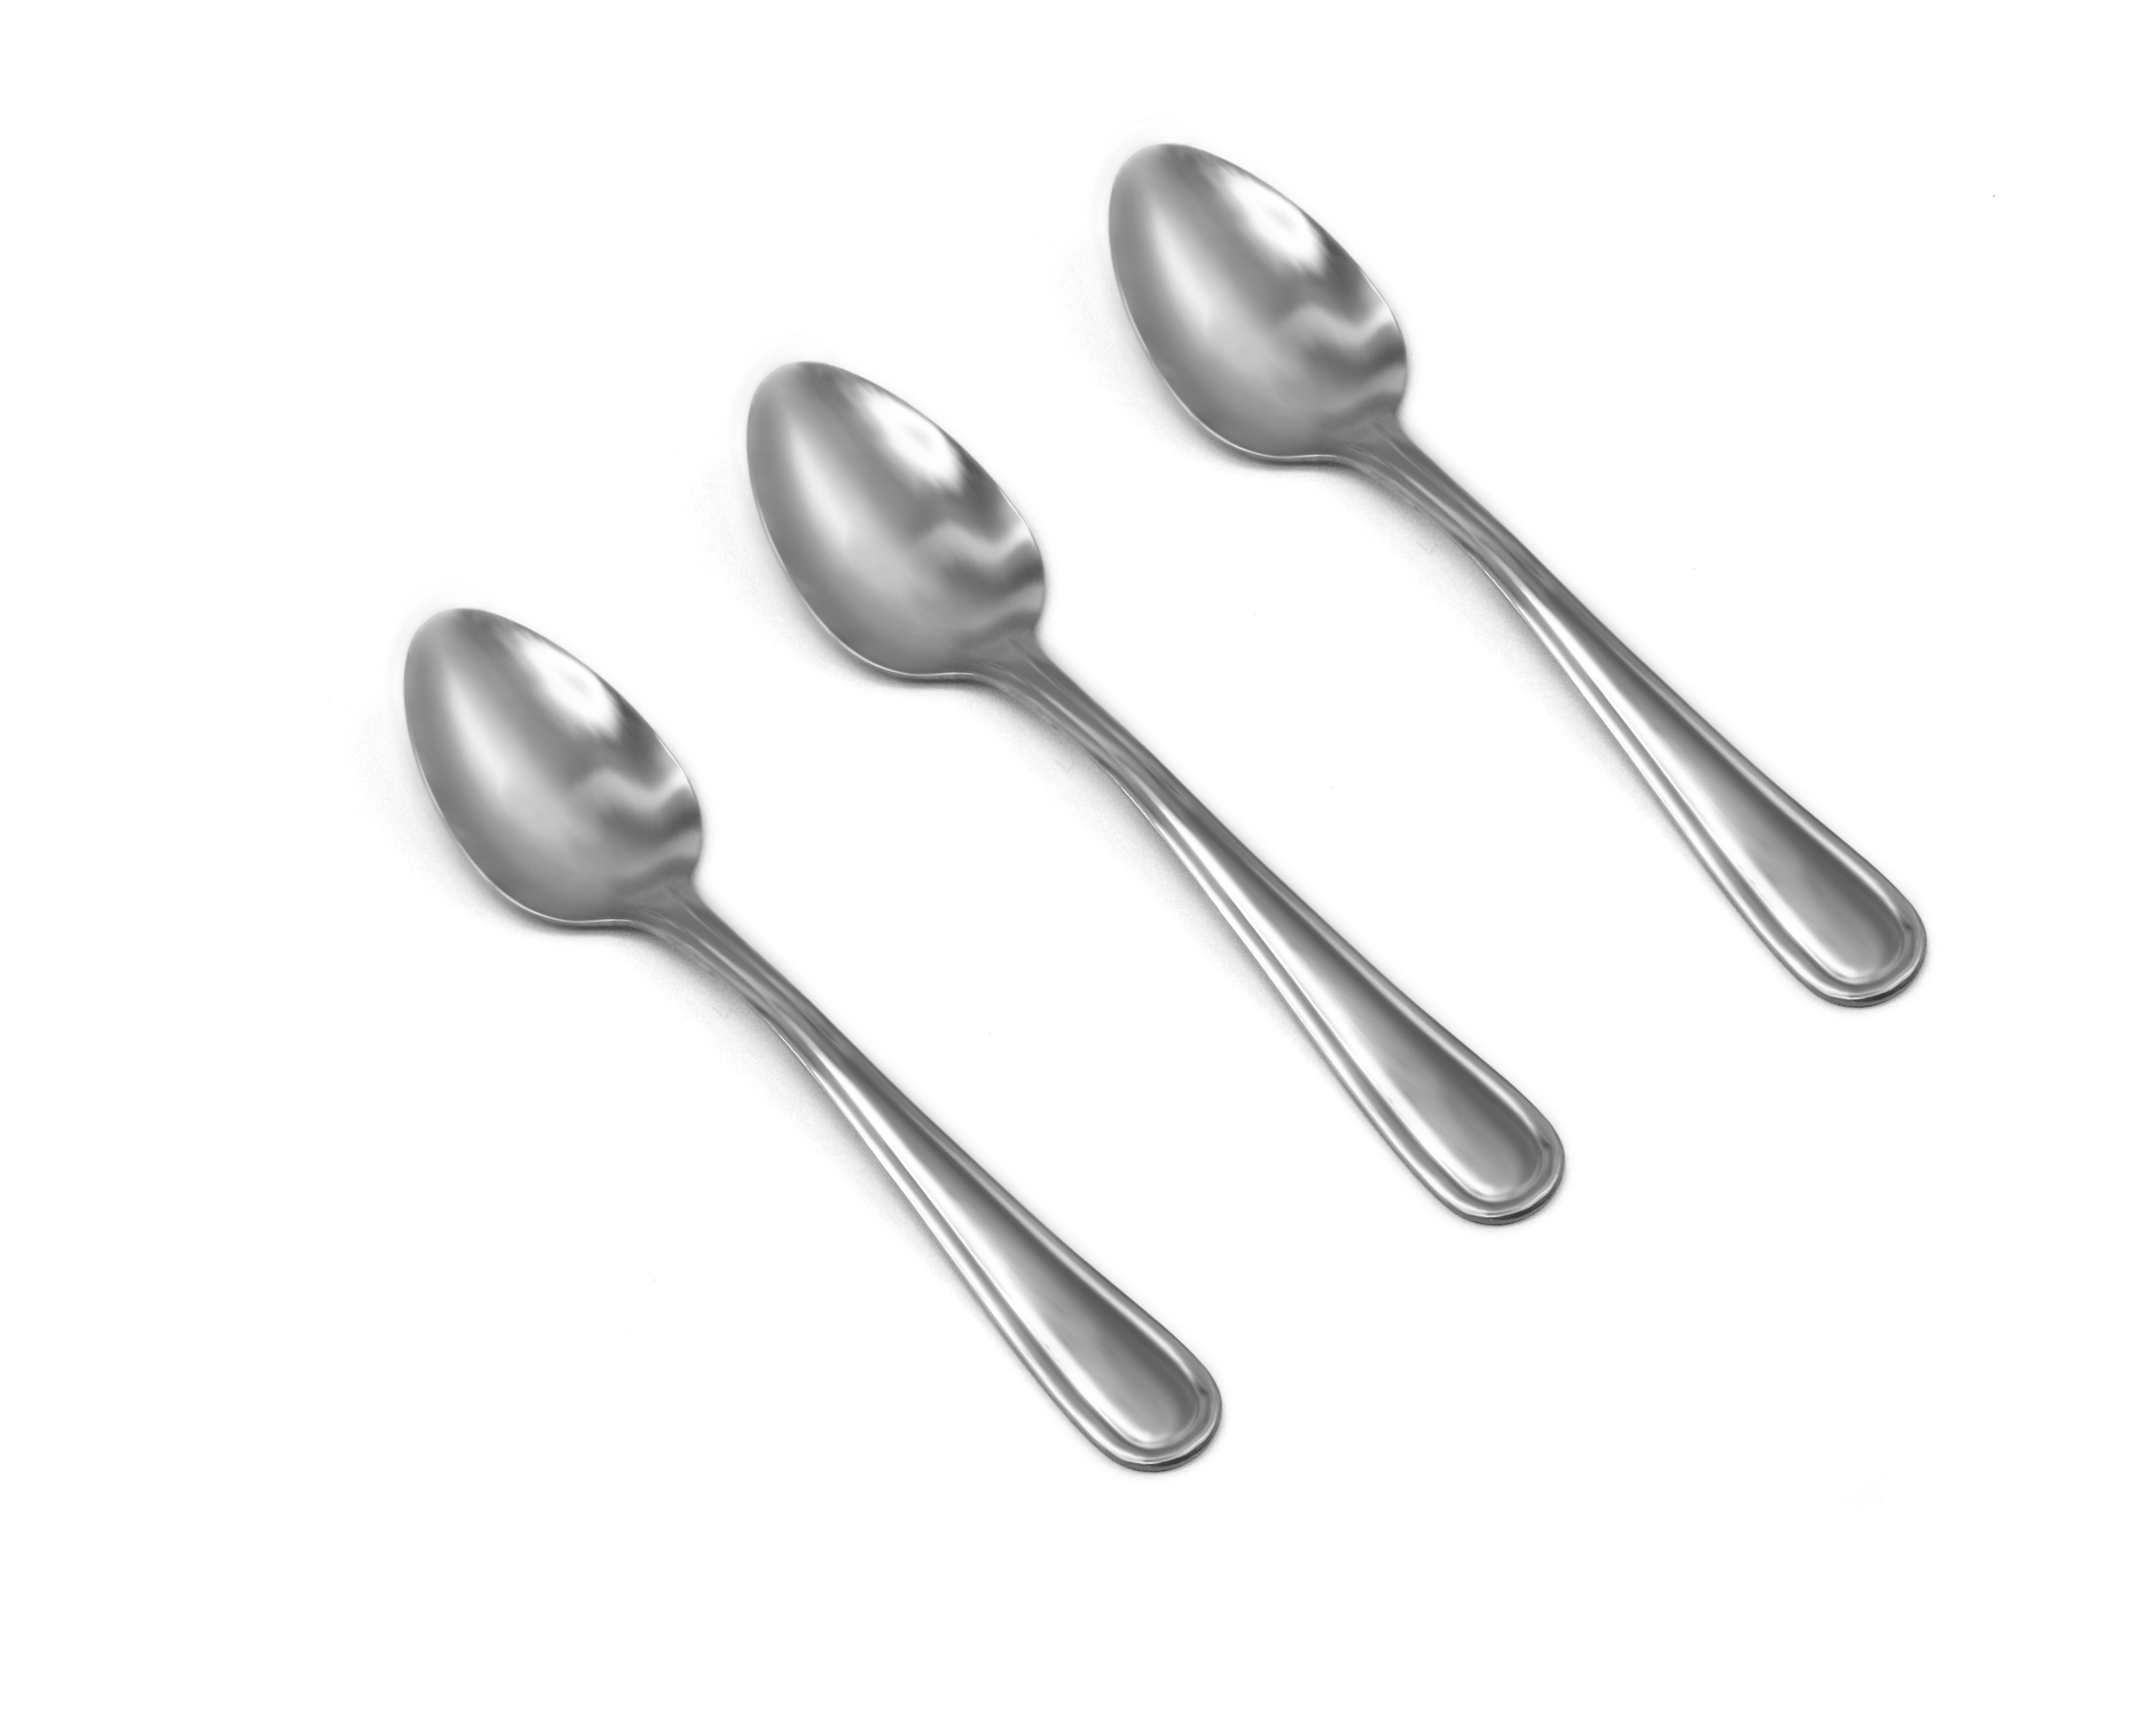 Mainstays Fleetline Stainless Steel Teaspoon, 3-Piece Set, Silver